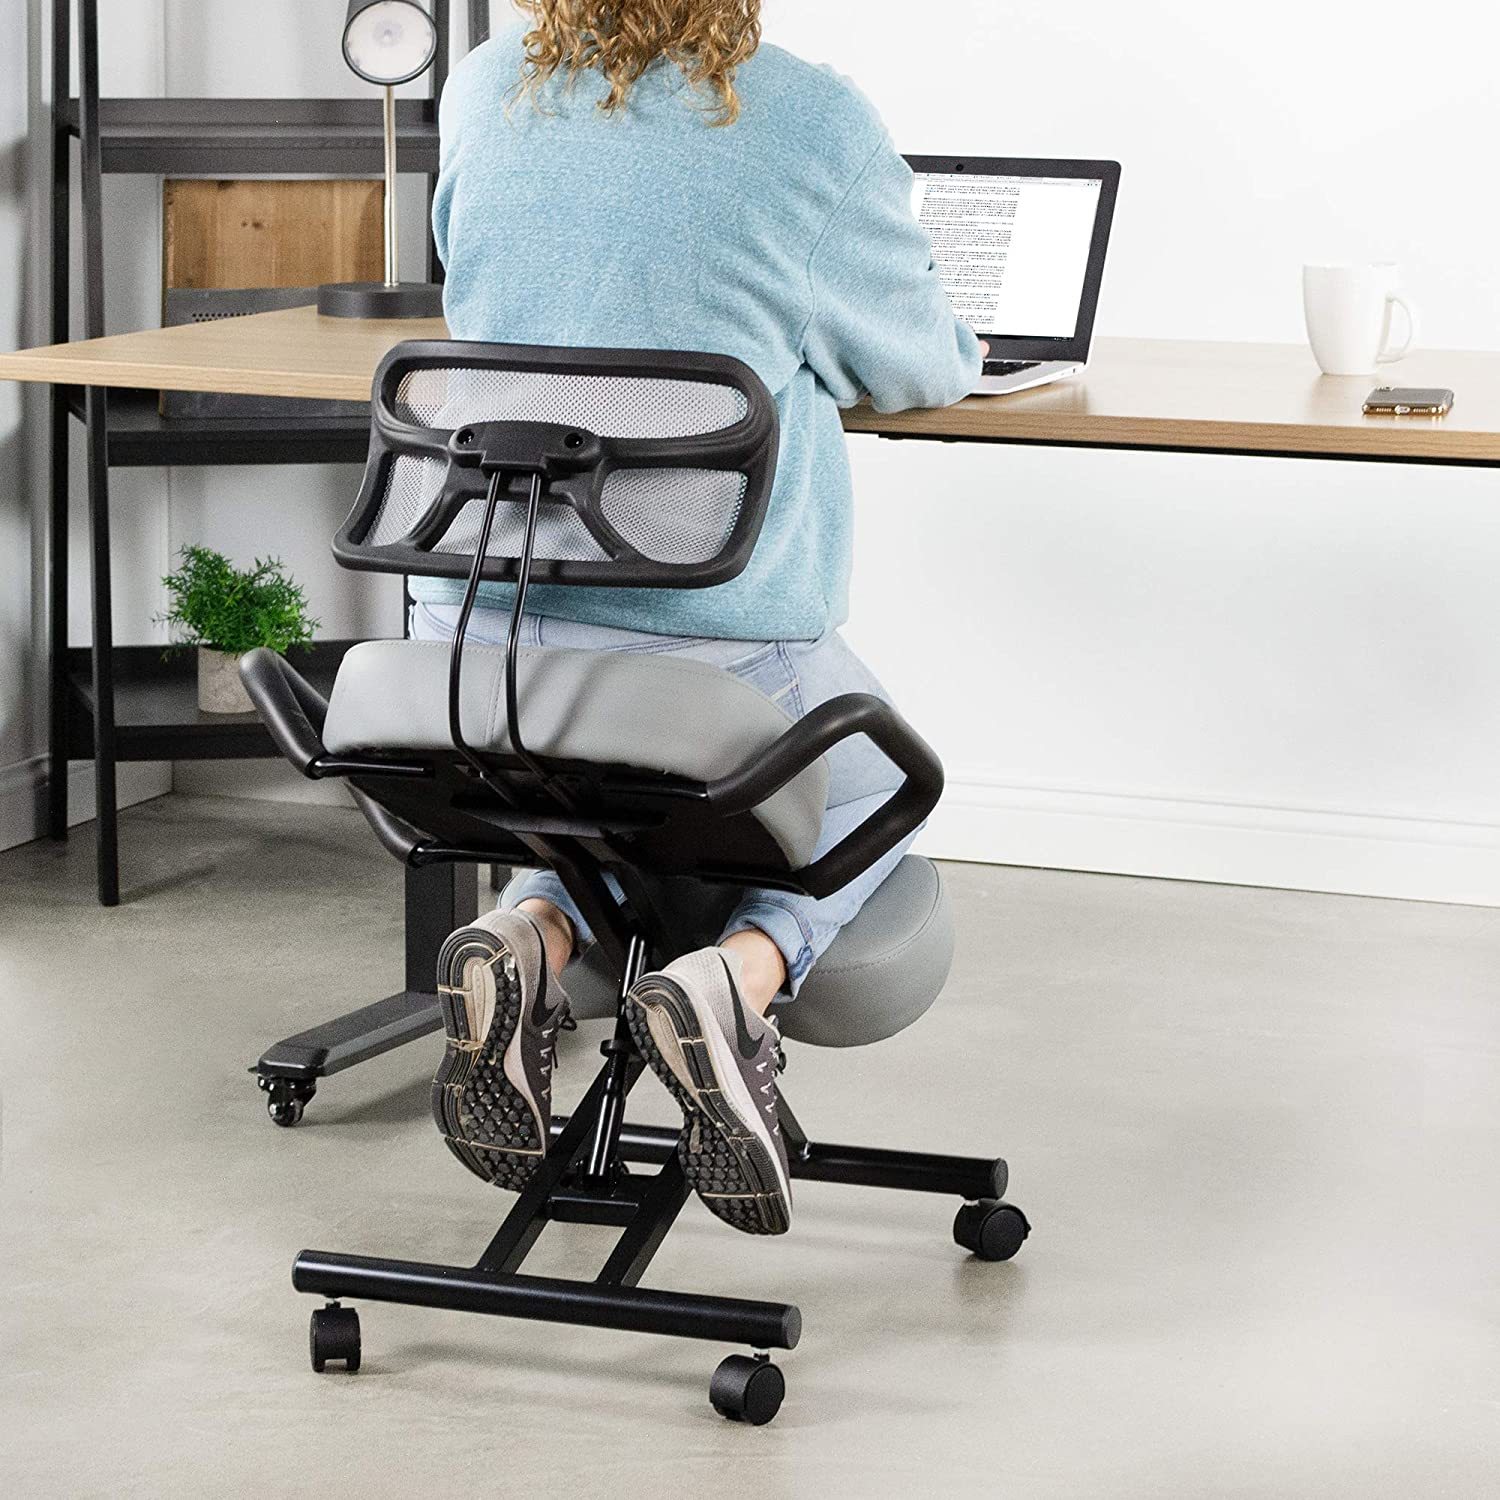 Trabaja de forma muy cómoda con las mejores sillas ergonómicas